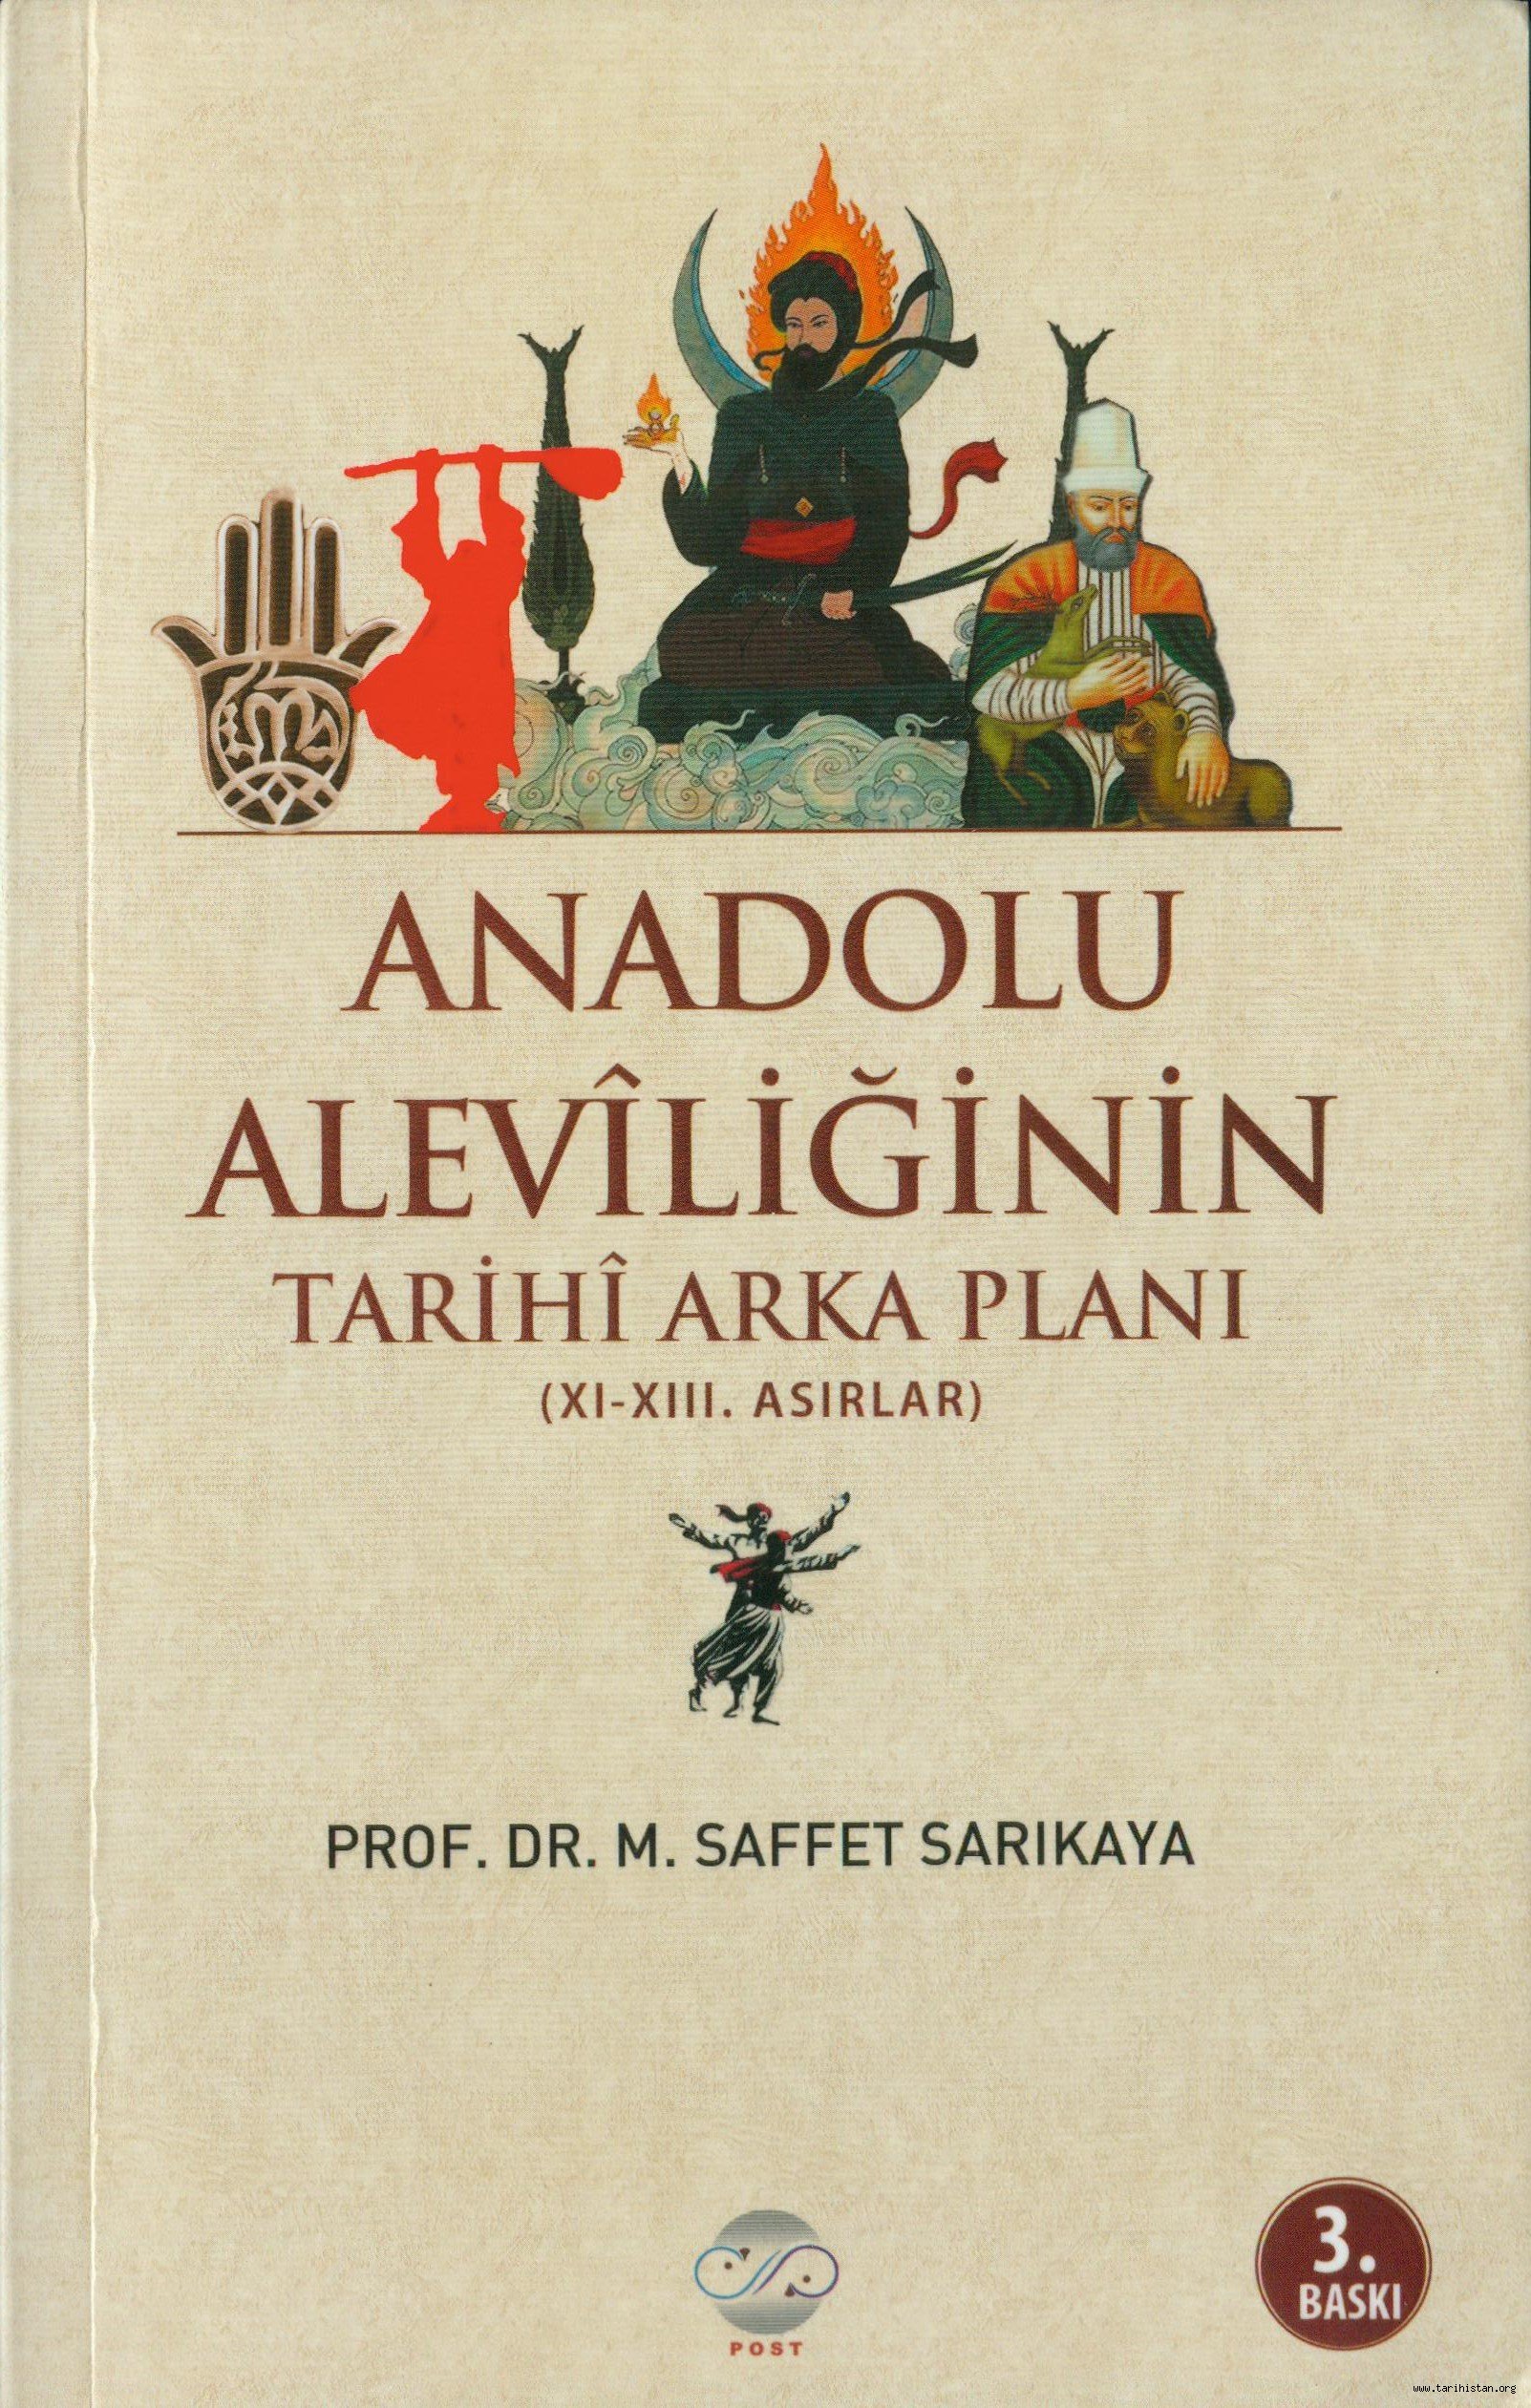 "Anadolu Alevîliğinin Tarihi Arka Planı"